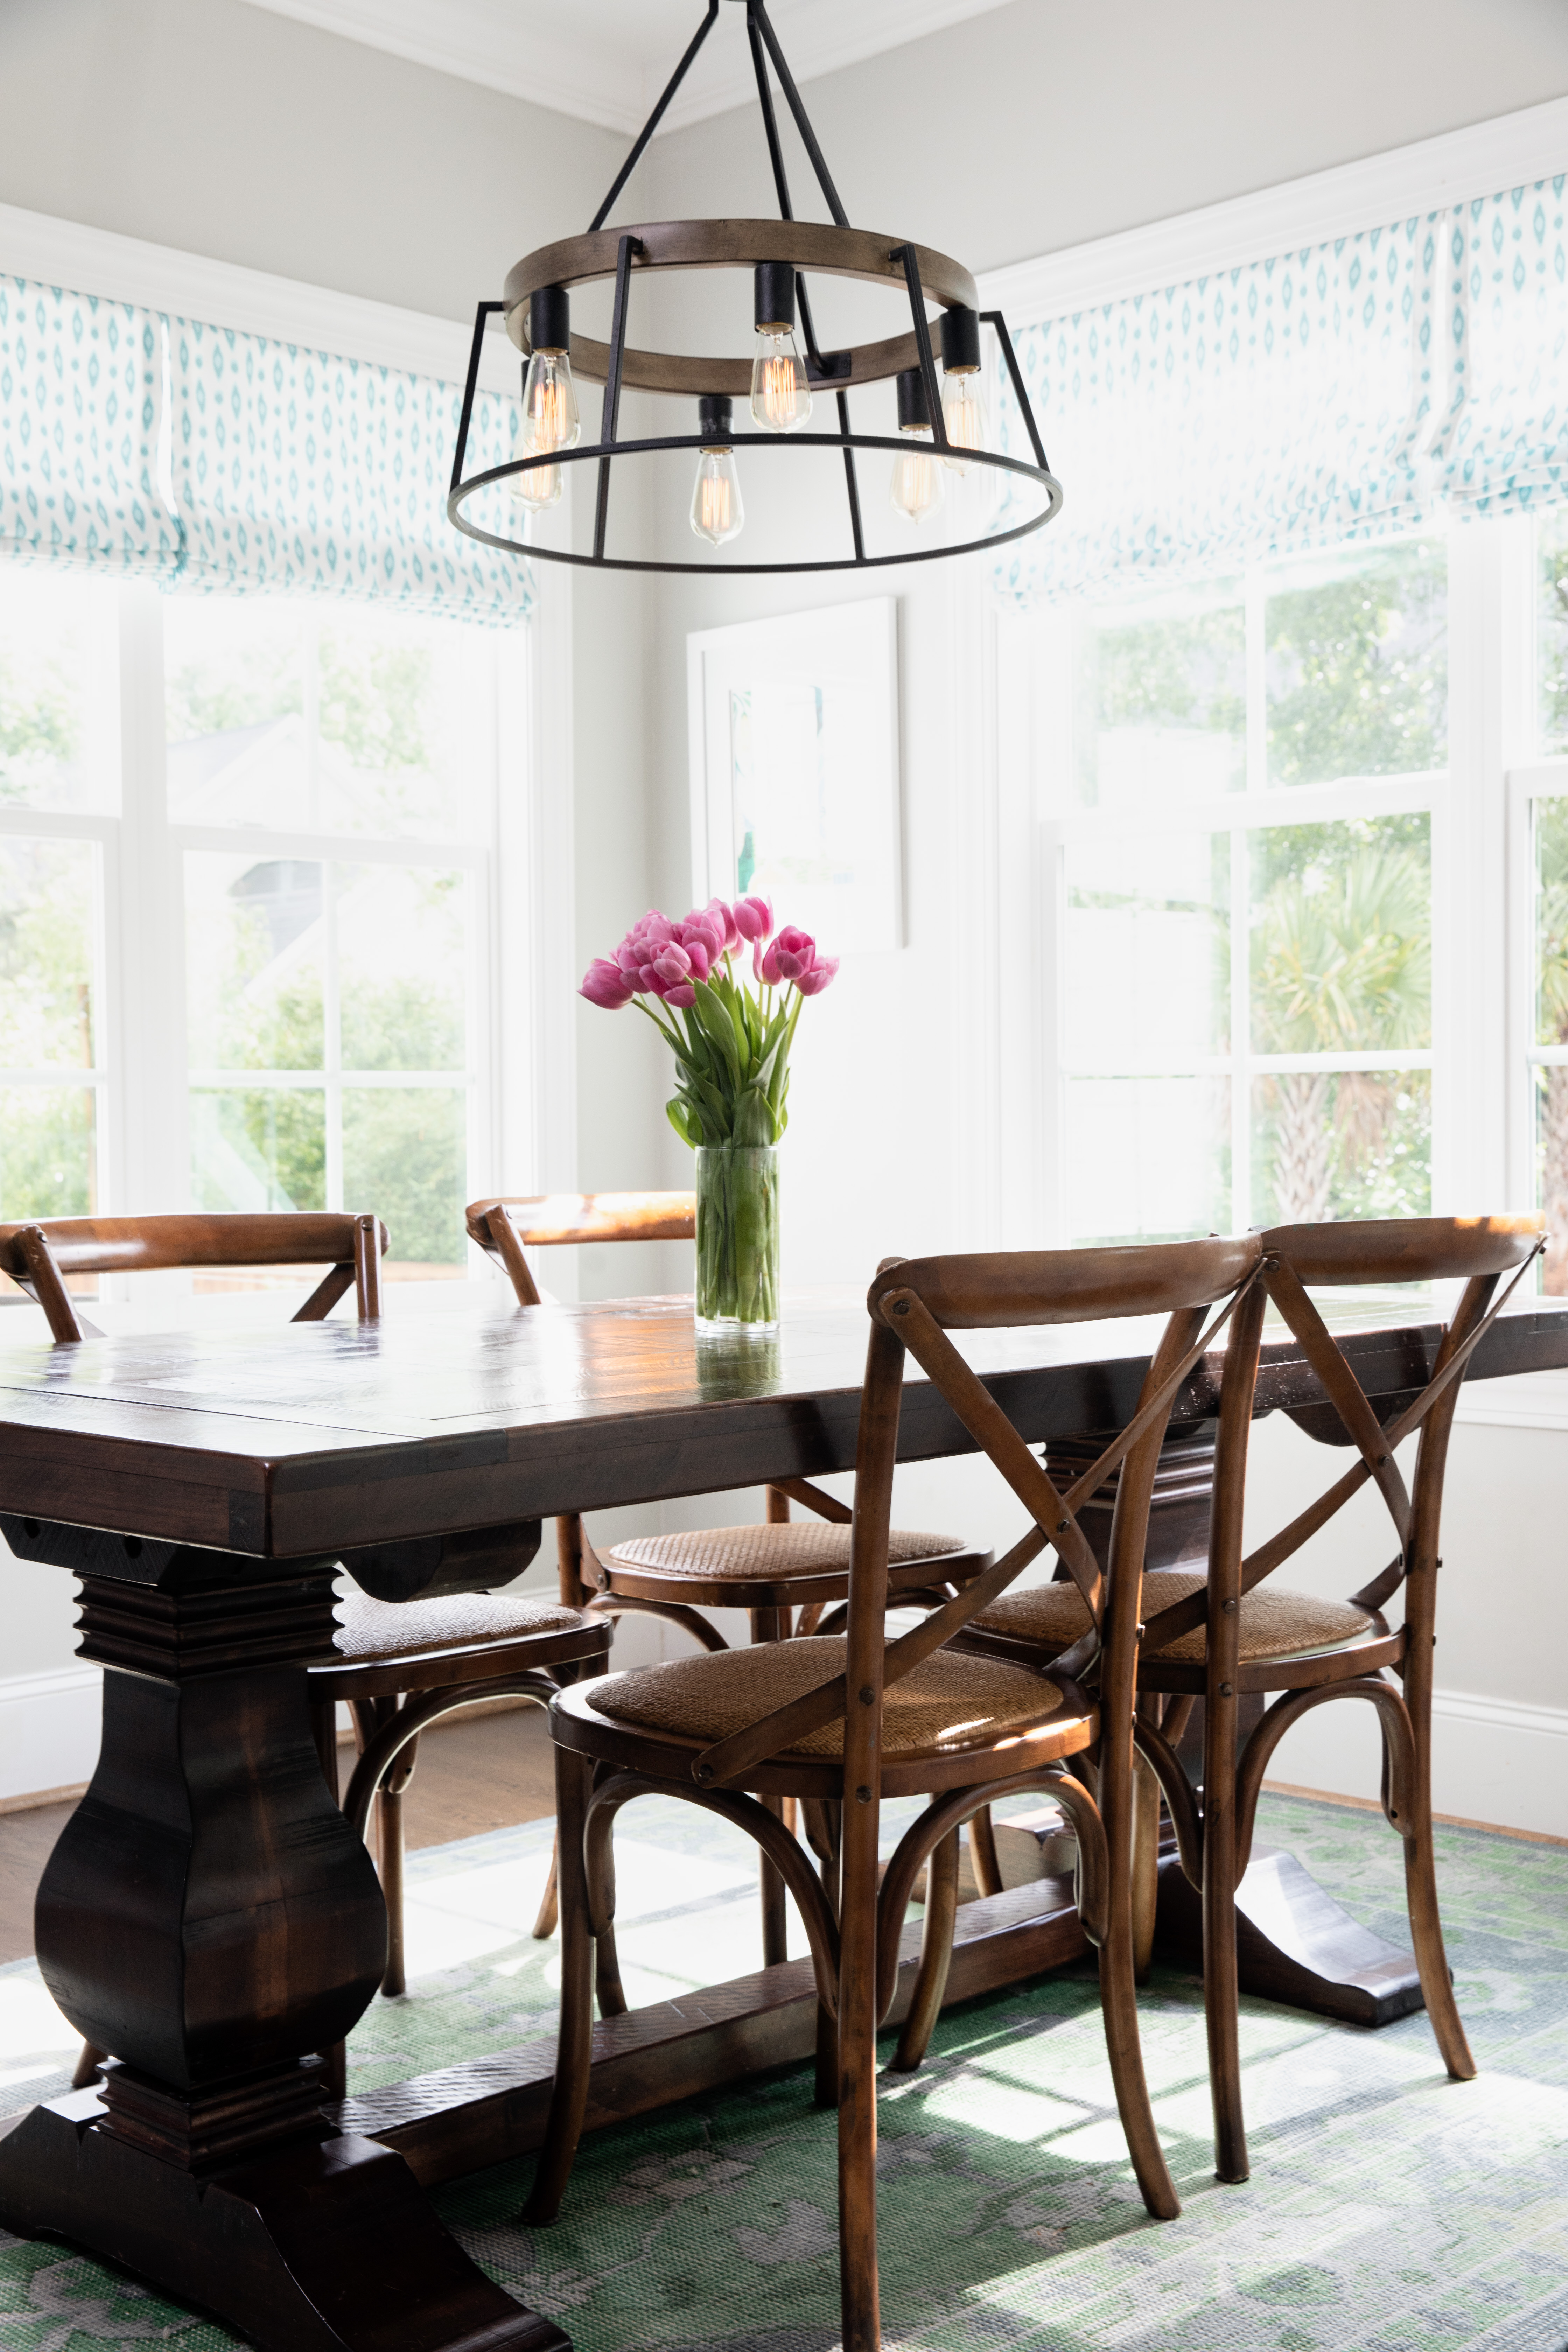 20 Trending Dining Room Light Fixtures, Pictures Of Light Fixtures Over Dining Room Tables